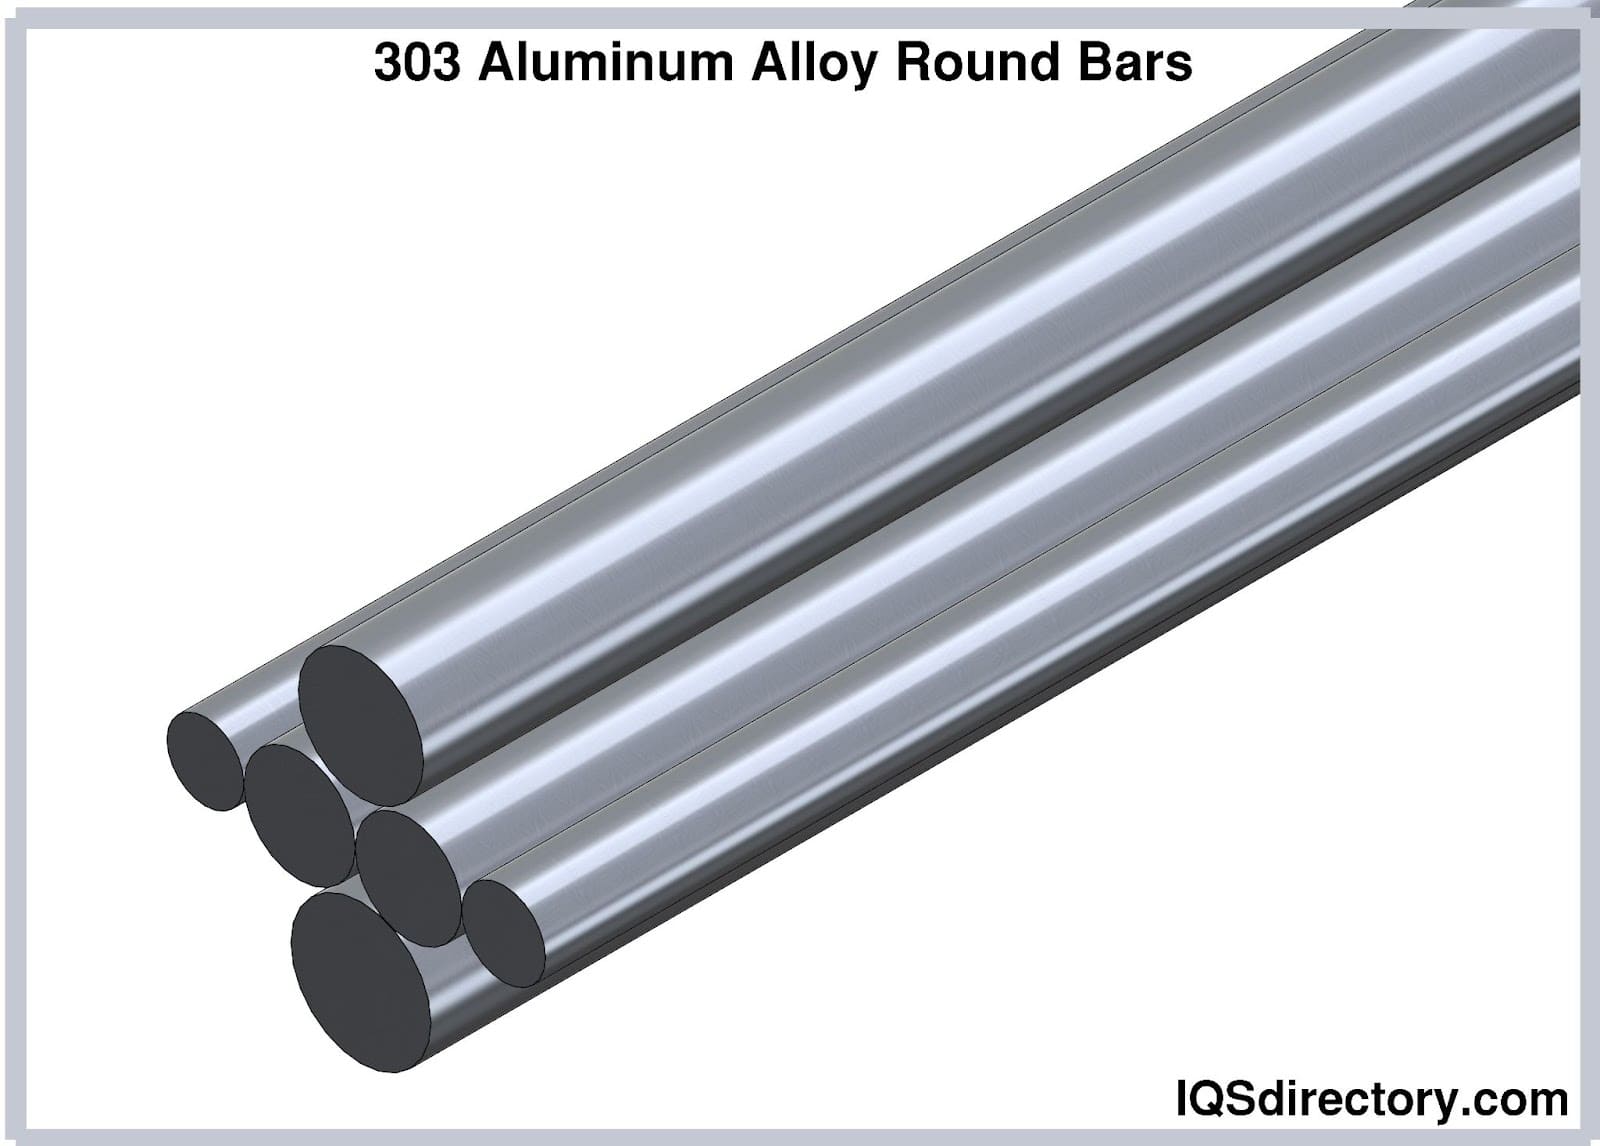 303 Aluminum Alloy Round Bars